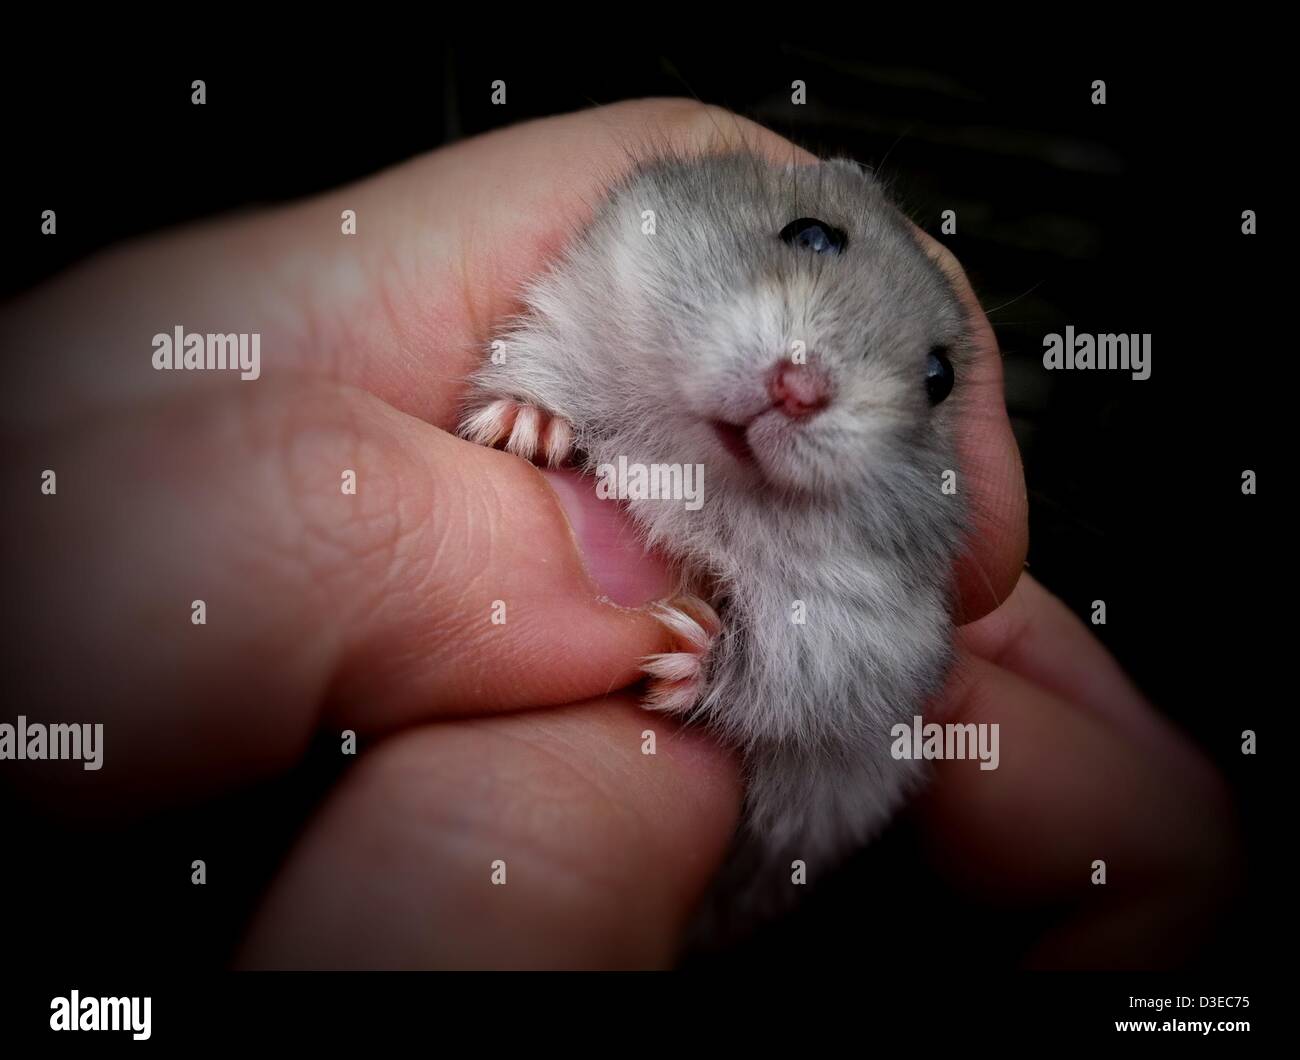 Febbraio 16, 2013 - Londra, Regno Unito - La Djungarian hamster (Phodopus  sungorus) è conosciuto anche come il criceto siberiano o inverno russo  white dwarf hamster. È a forma di sfera e